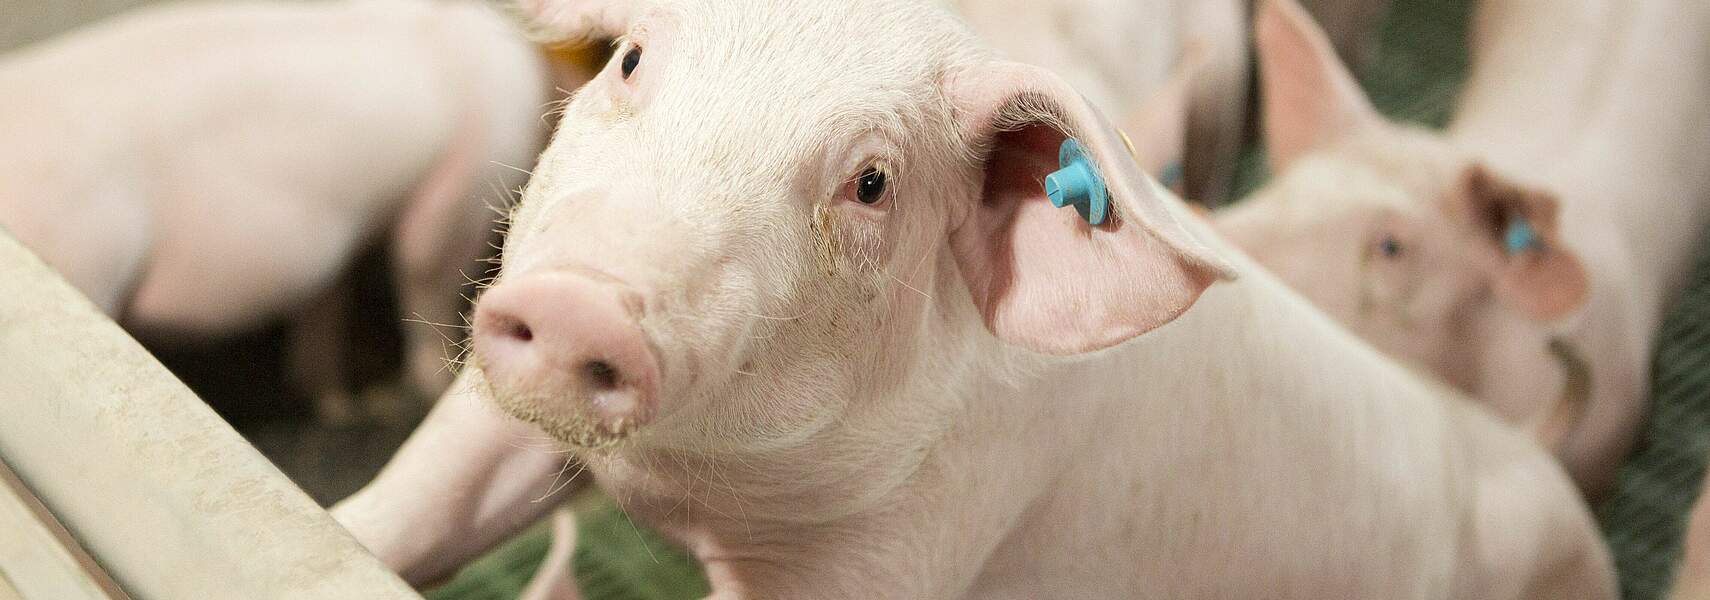 Bauernverband kritisiert Gesetzentwurf zur Tierhaltungskennzeichnung